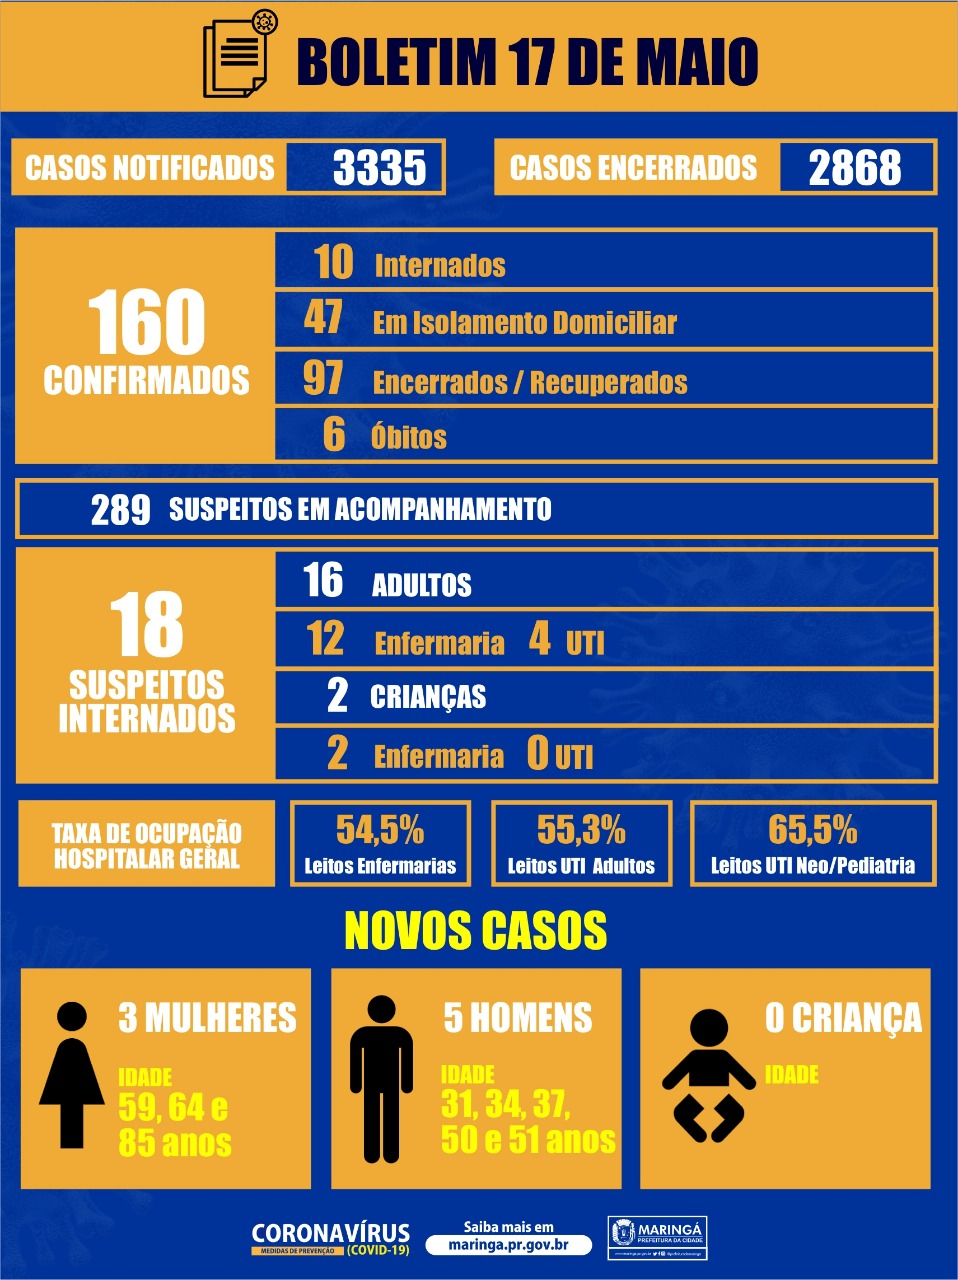 Casos  de coronavírus em Maringá 17/05  : 5 homens, de 31, 34, 37, 50 e 51 anos, e 3 mulheres, de 59, 64 e 85 anos